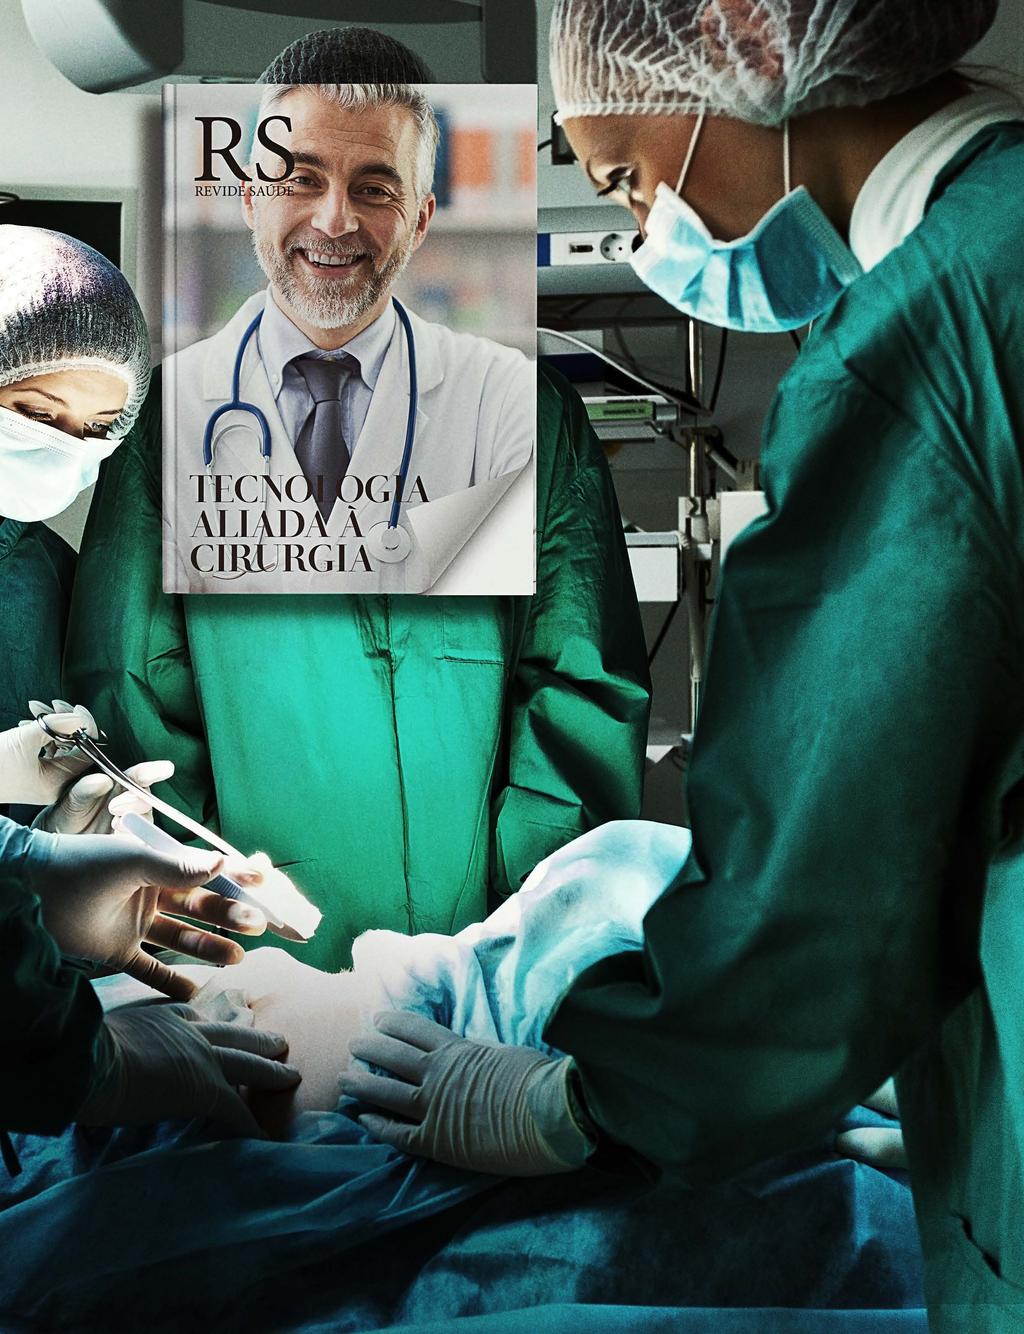 RS - revide saúde A RS - Revide Saúde é uma revista voltada exclusivamente à saúde do corpo e da mente, com reportagens que apresentam as principais novidades da medicina.